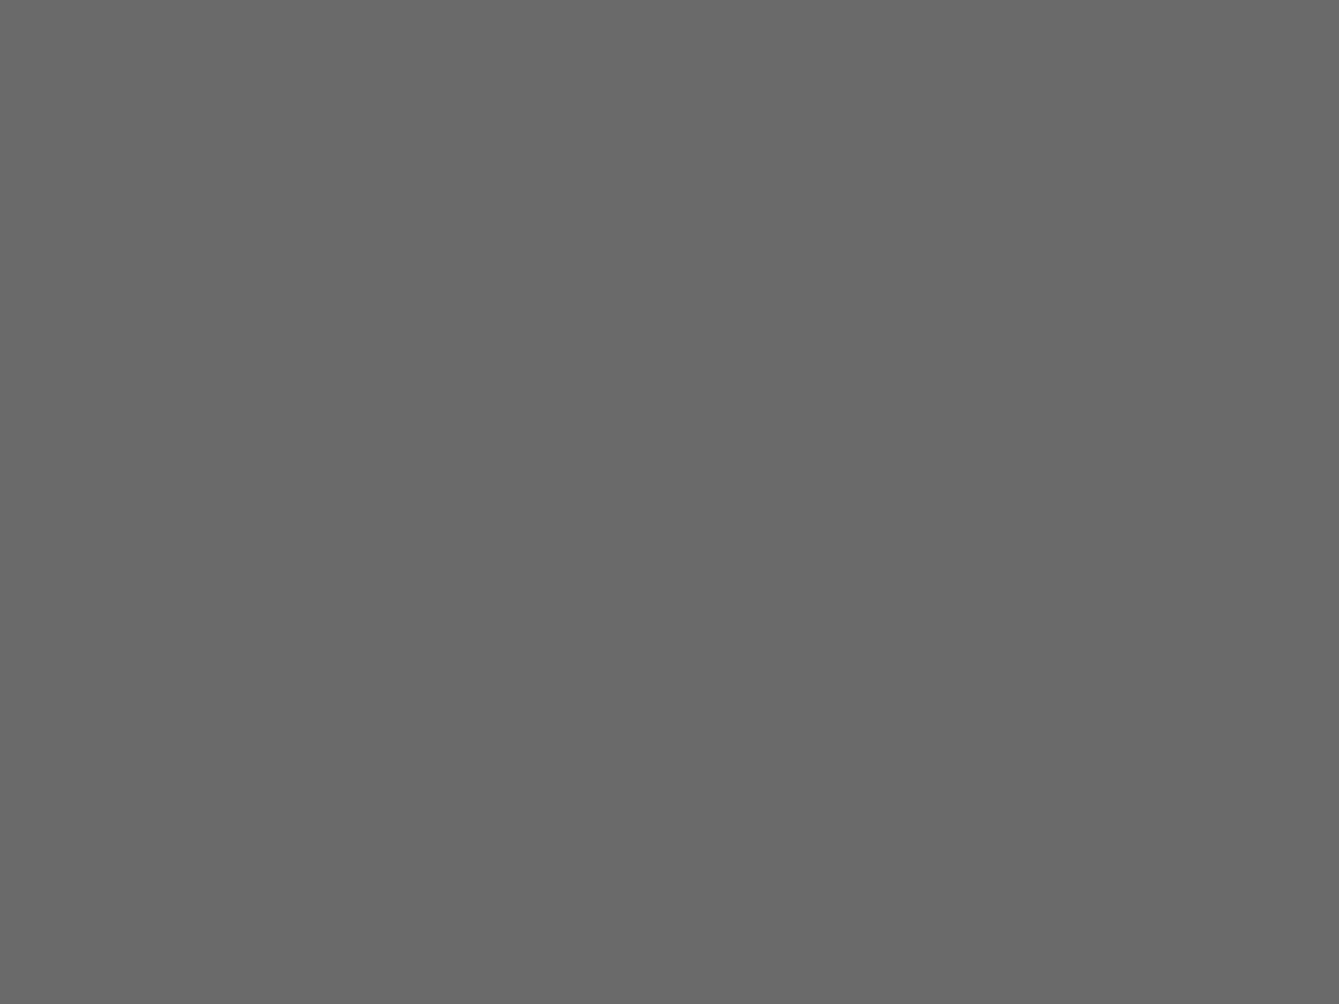 Борис Лебедев. Критик Виссарион Белинский и Николай Гоголь (фрагмент). Открытка из серии «В.Г. Белинский в рисунках Б. Лебедева». Москва: Искусство, 1948